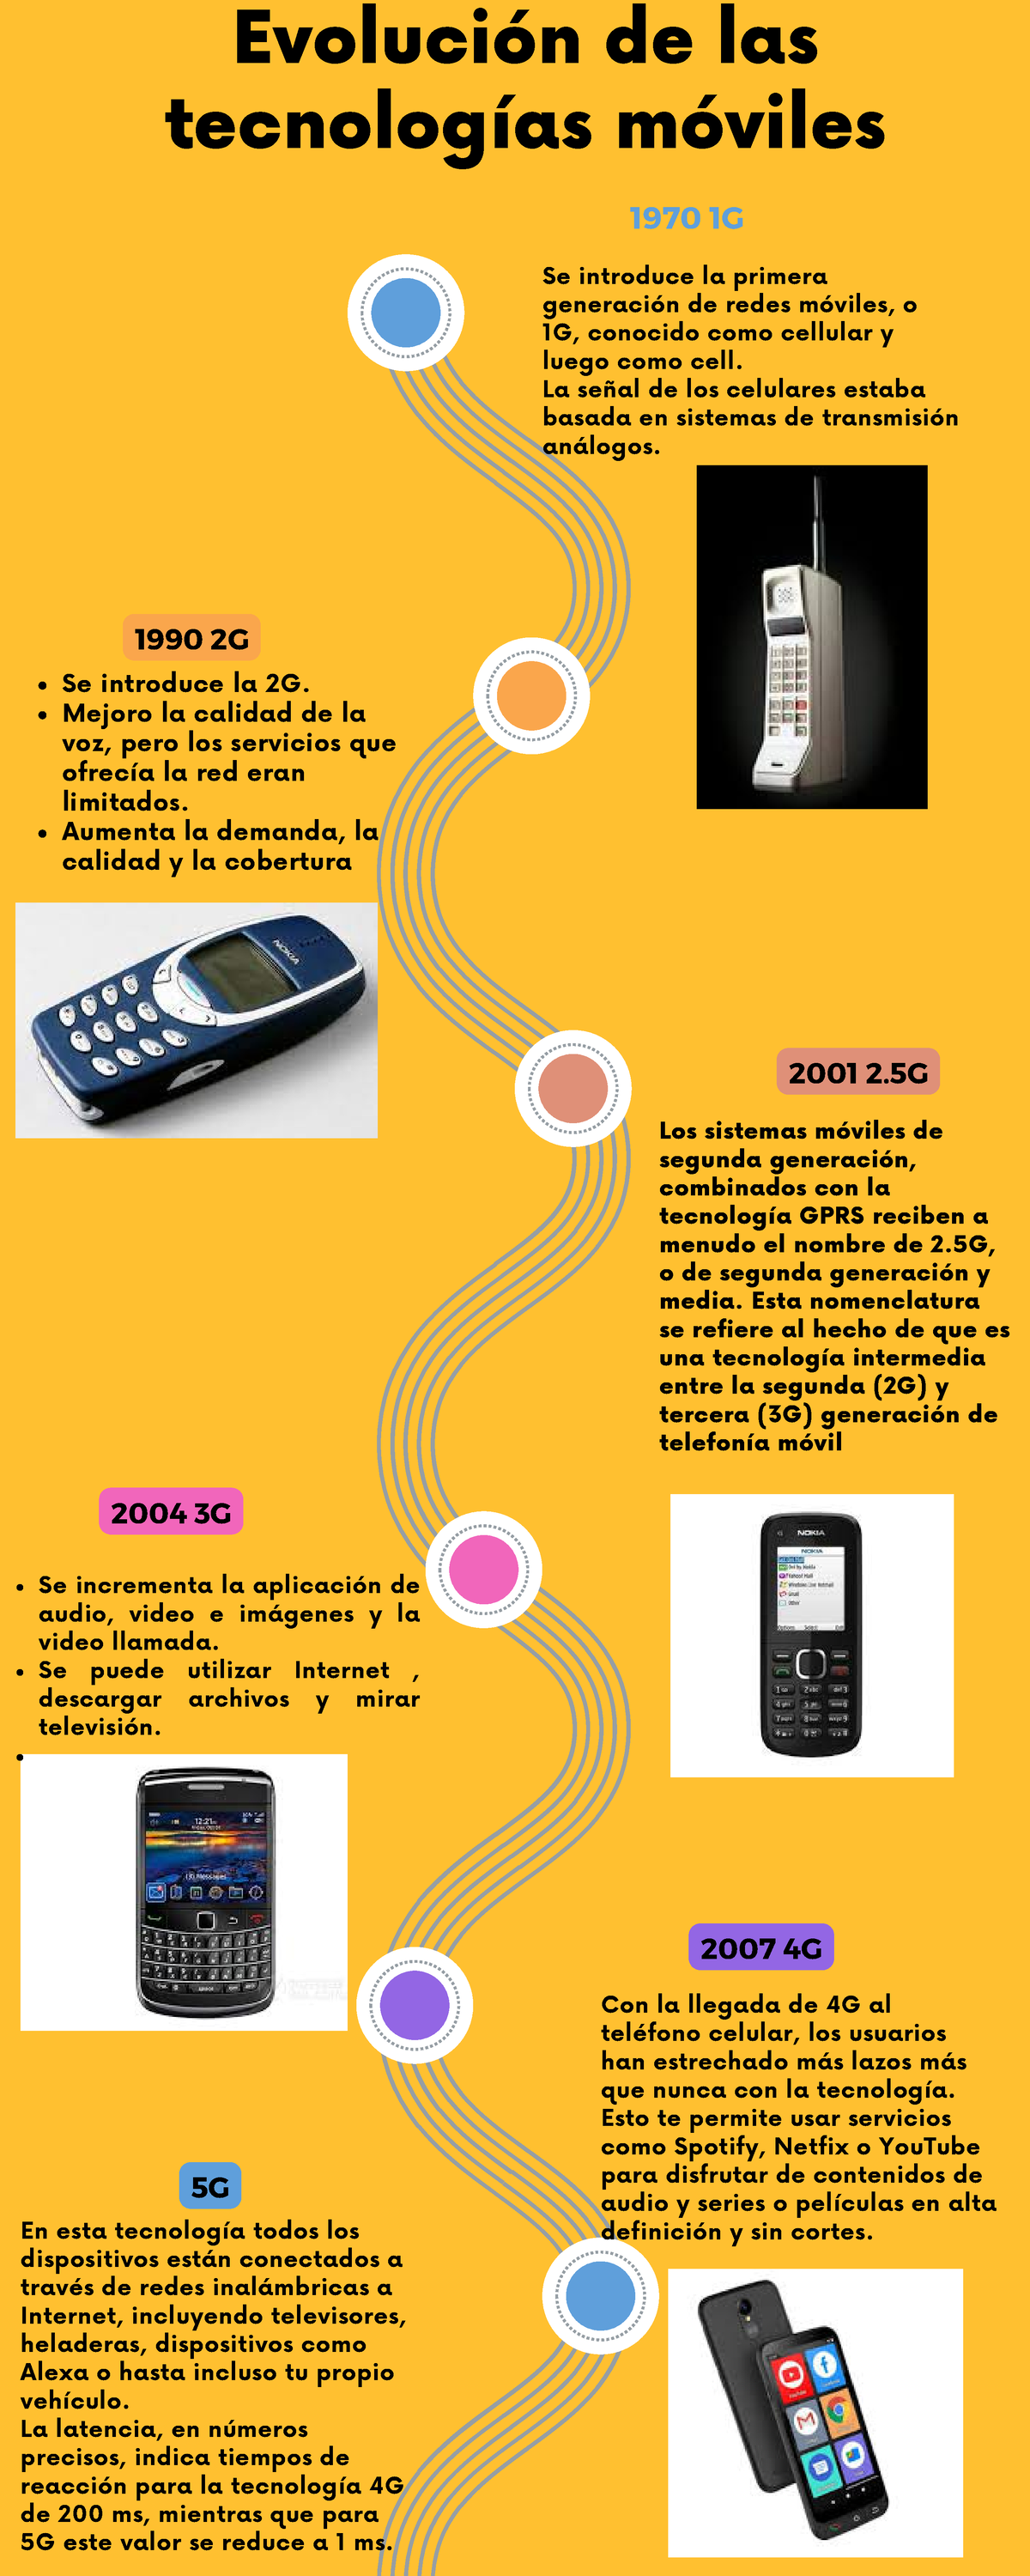 Evolución de las tecnologías móviles - 1970 1G 2001 2 2007 4G 1990 2G 2004  3G 5G Se introduce la - Studocu